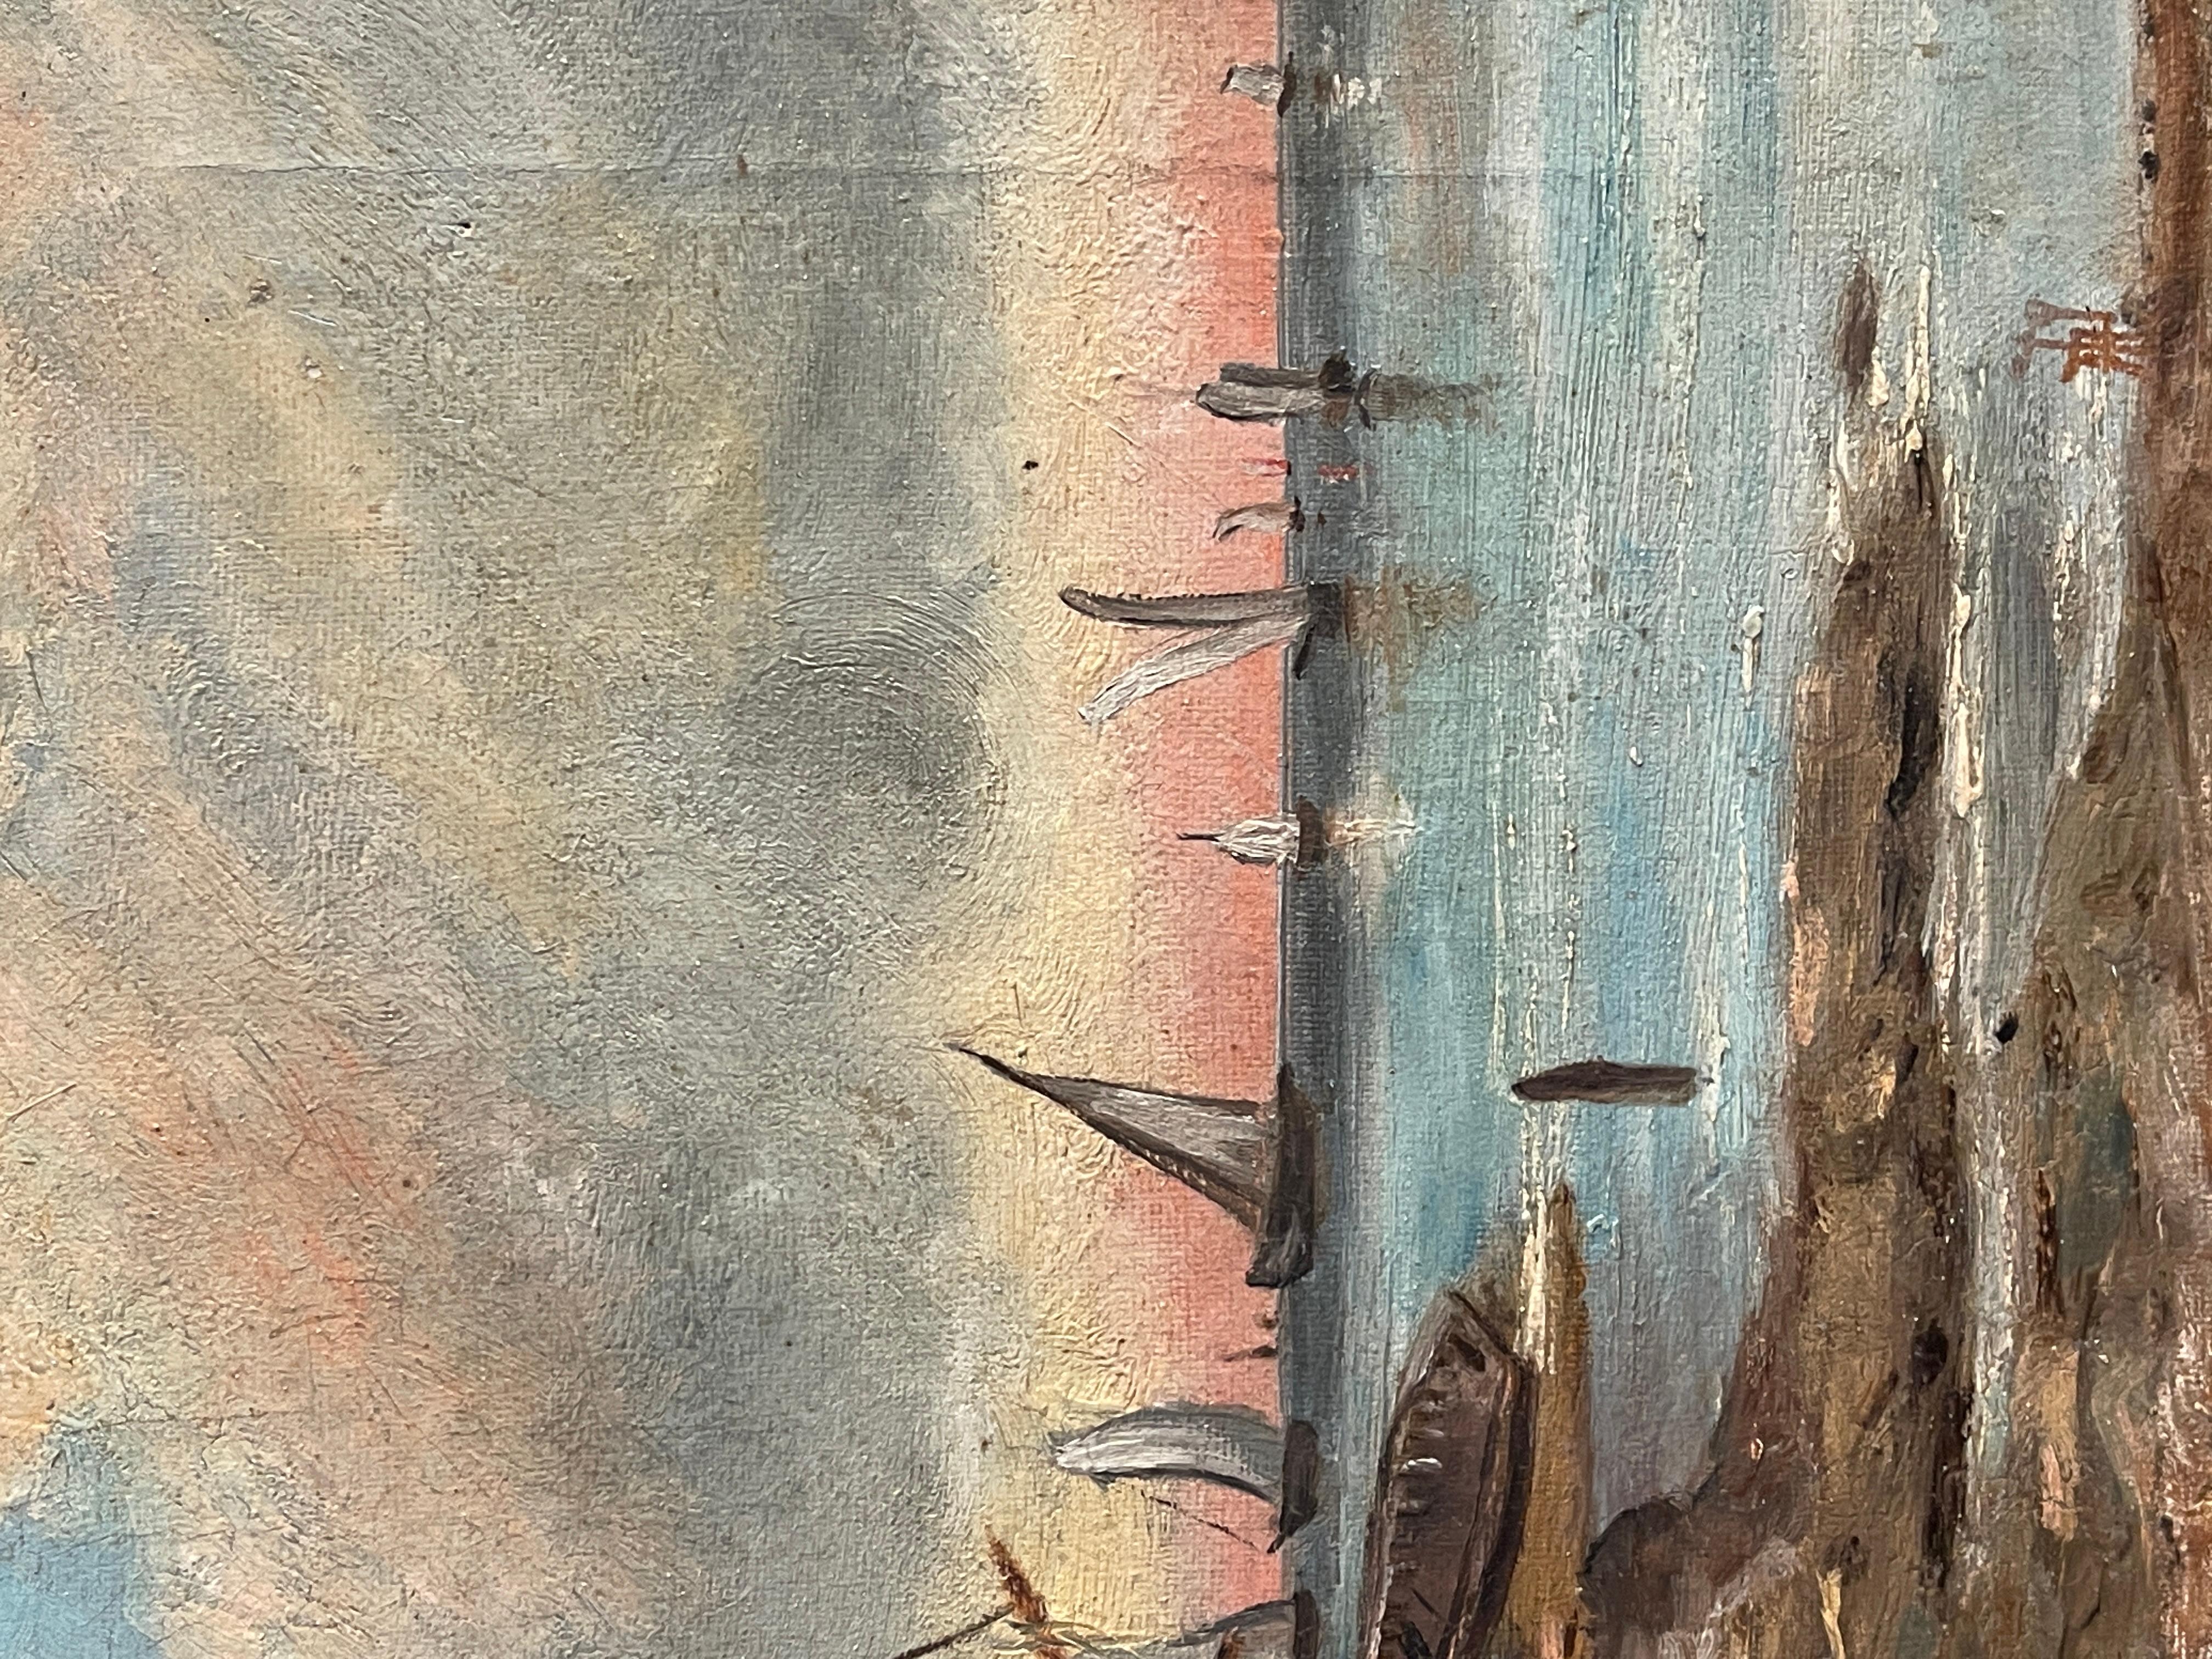 Peinture à l'huile sur toile, Marin, 20e siècle
Scène de bateaux à sec avec des personnages, en arrière-plan des voiliers entourés des lumières du coucher de soleil.
Bon état comme sur la photo
Dimensions : 35x25cm